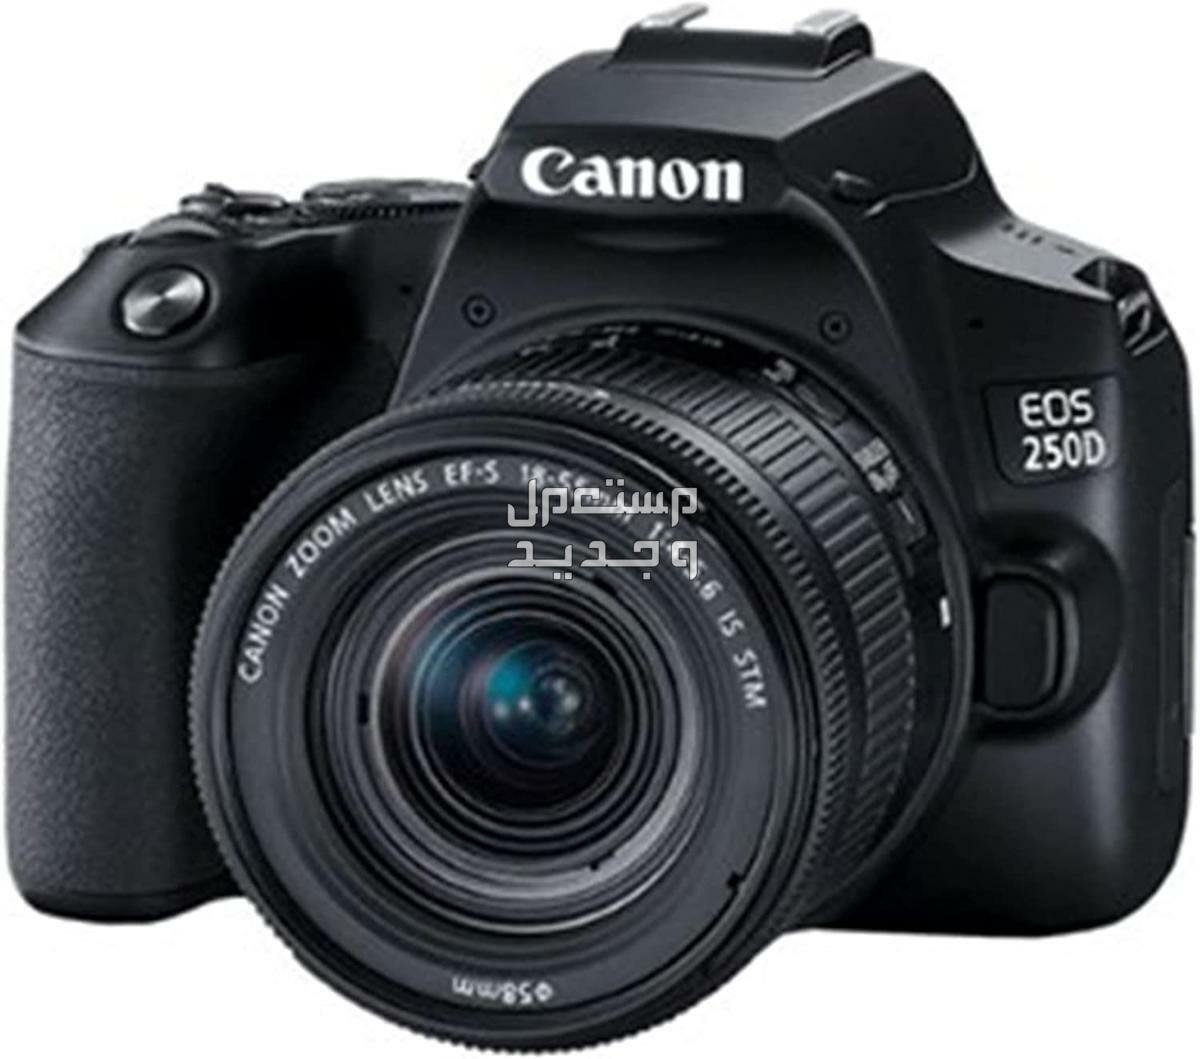 سعر ومميزات ومواصفات أرخص 5 كاميرات تصوير من كانون في السودان كاميرا Canon EOS 250D